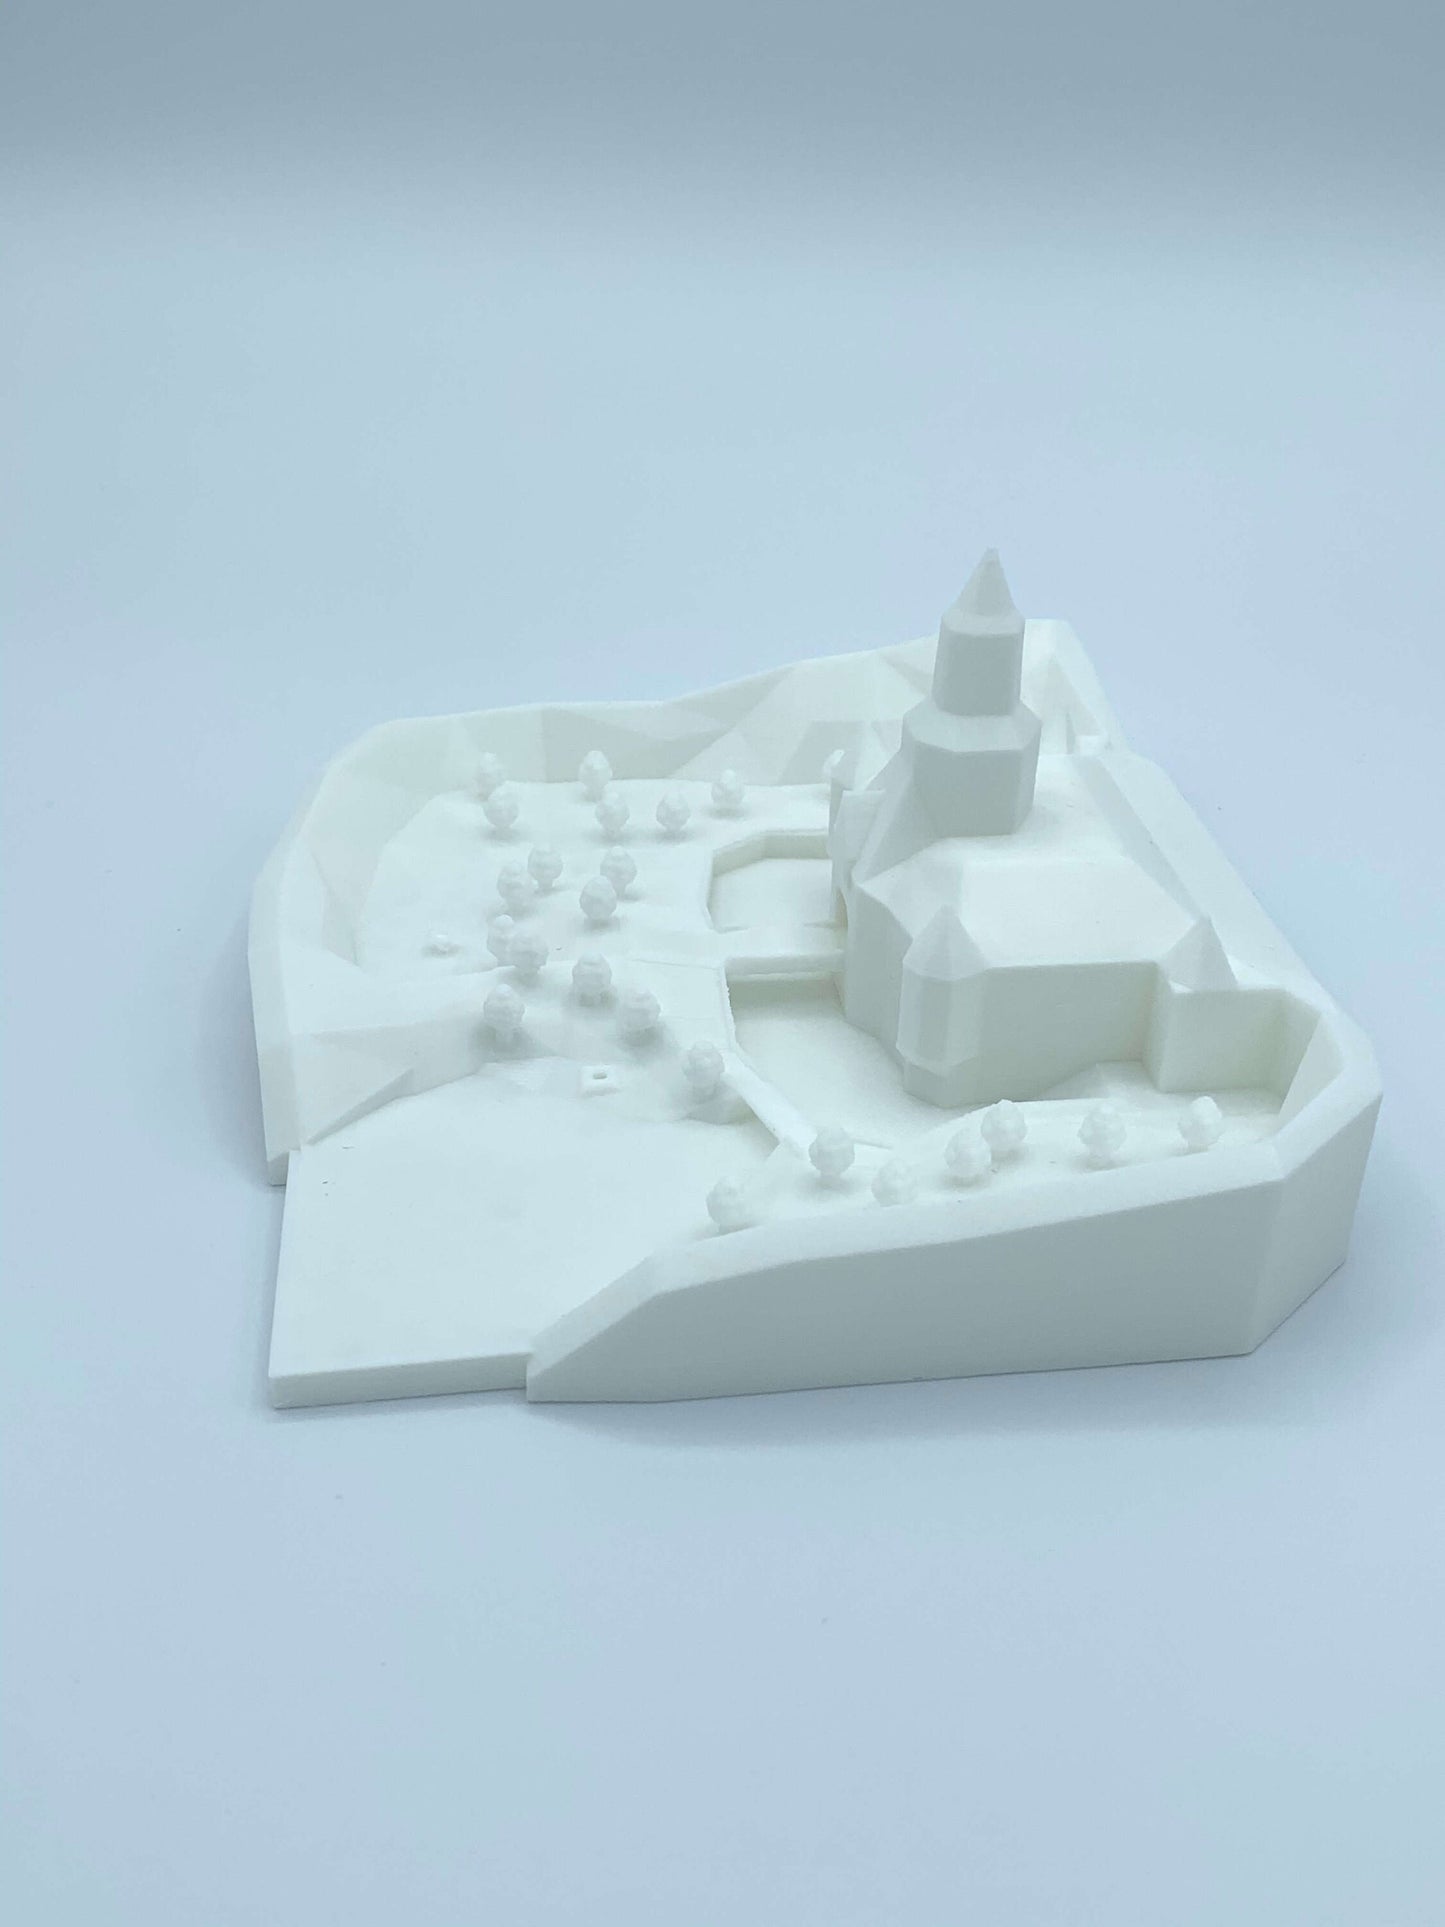 Peach's Castle N64 3D Printed Model